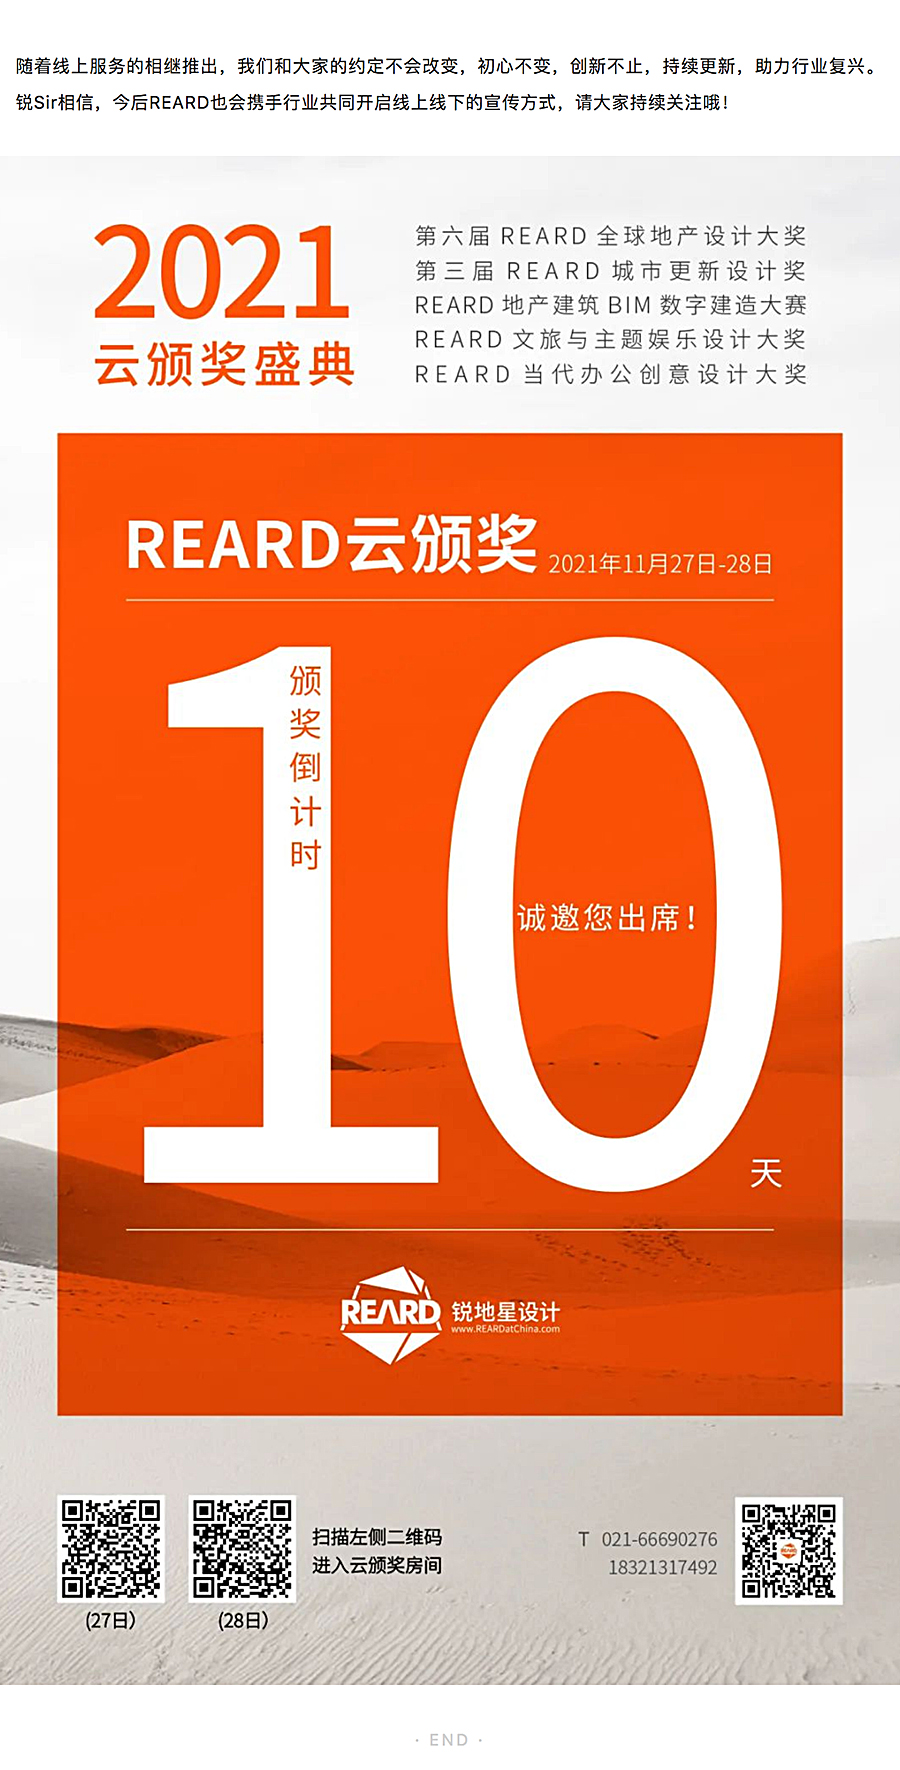 REARD创新-_-虚拟演播技术开启“REARD云颁奖”，评委云齐聚，引领行业新势能_0004_图层-5.jpg